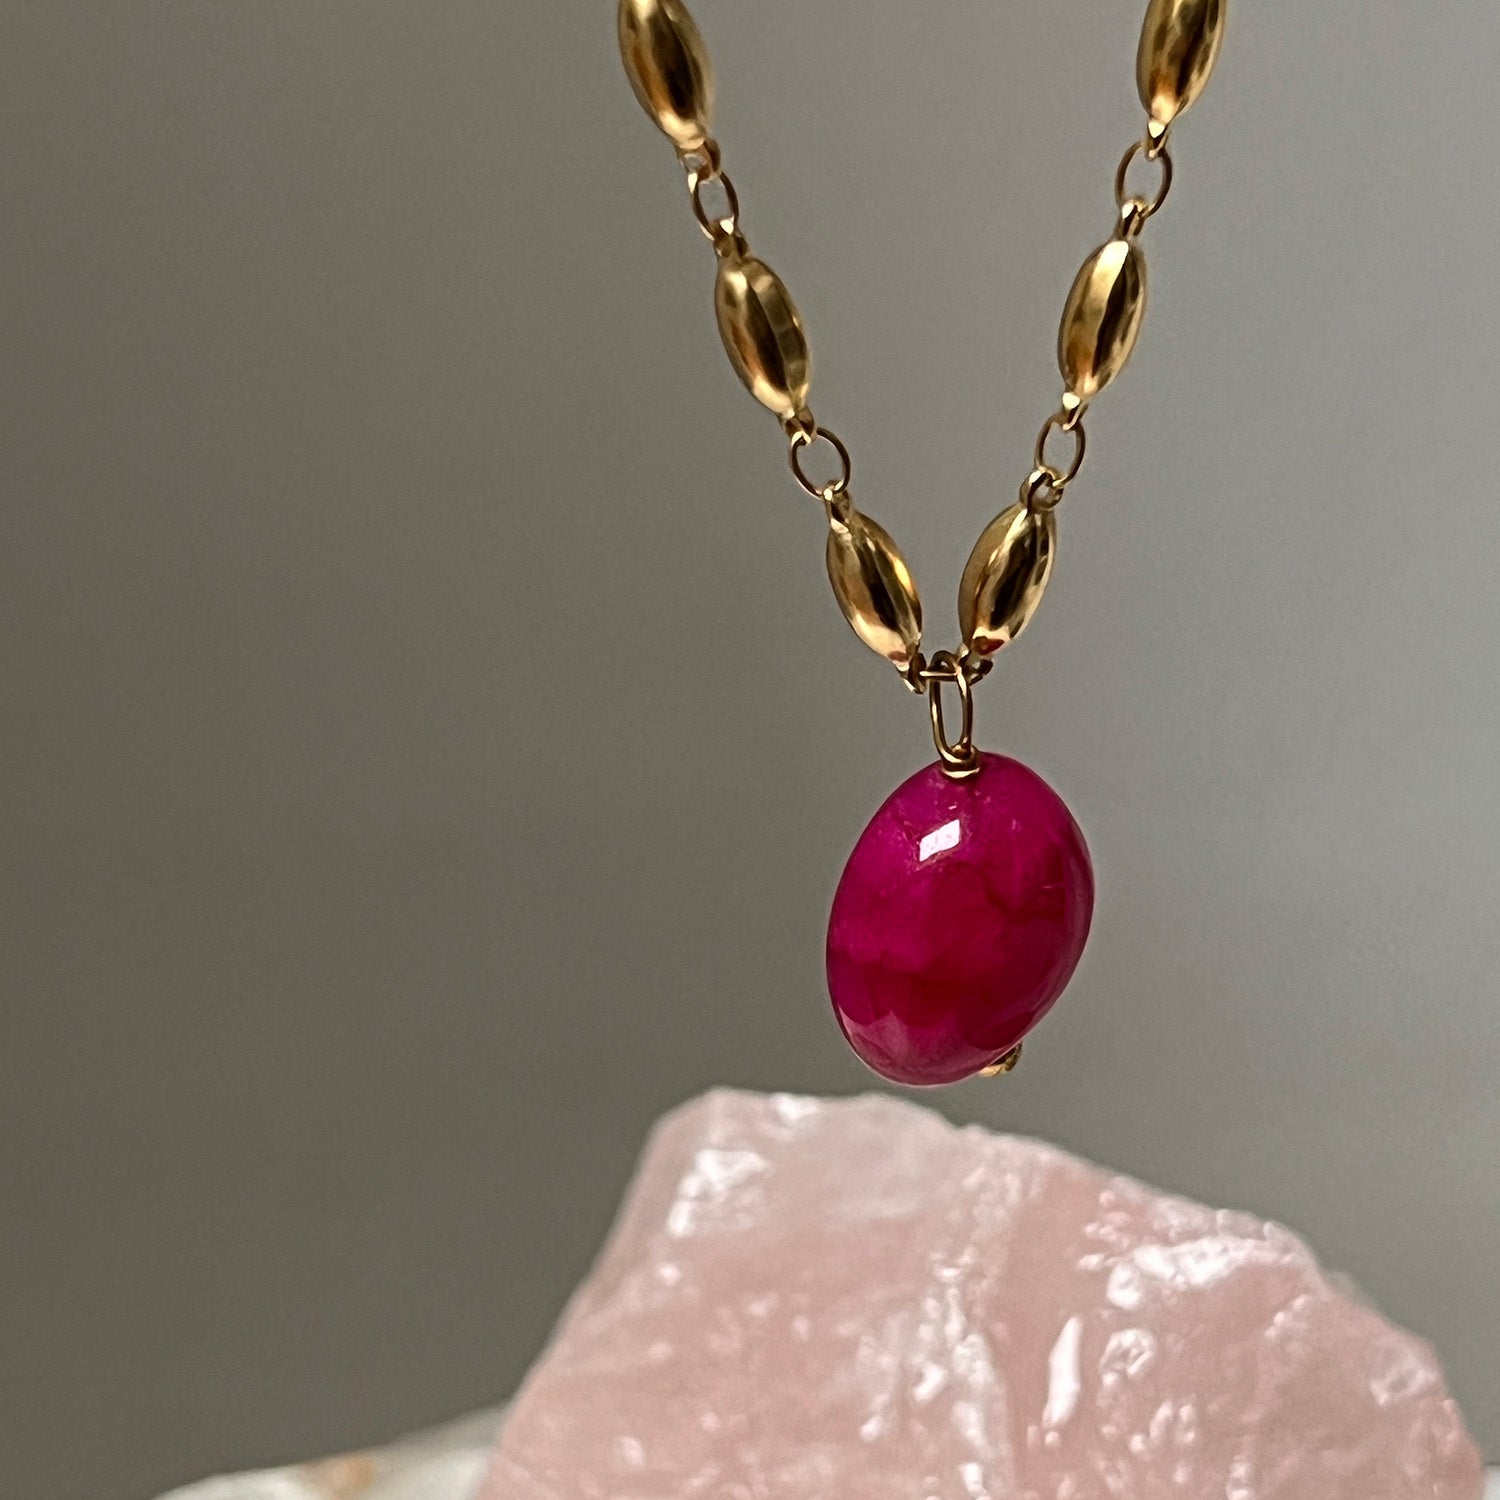 Unique Pepin Chain With Vibrant Pink Quartz